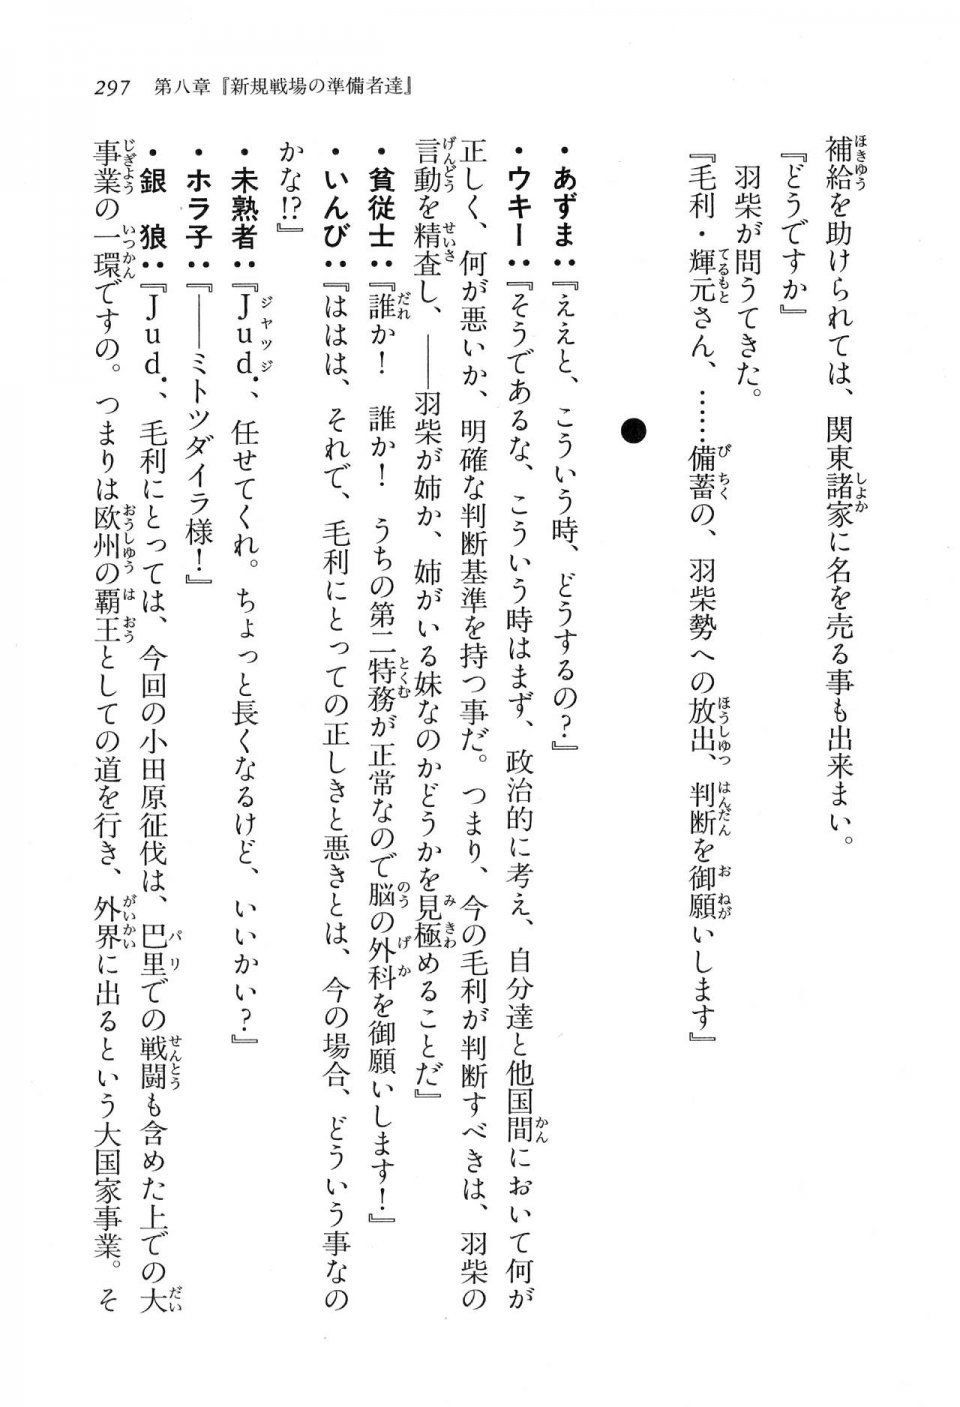 Kyoukai Senjou no Horizon LN Vol 16(7A) - Photo #297